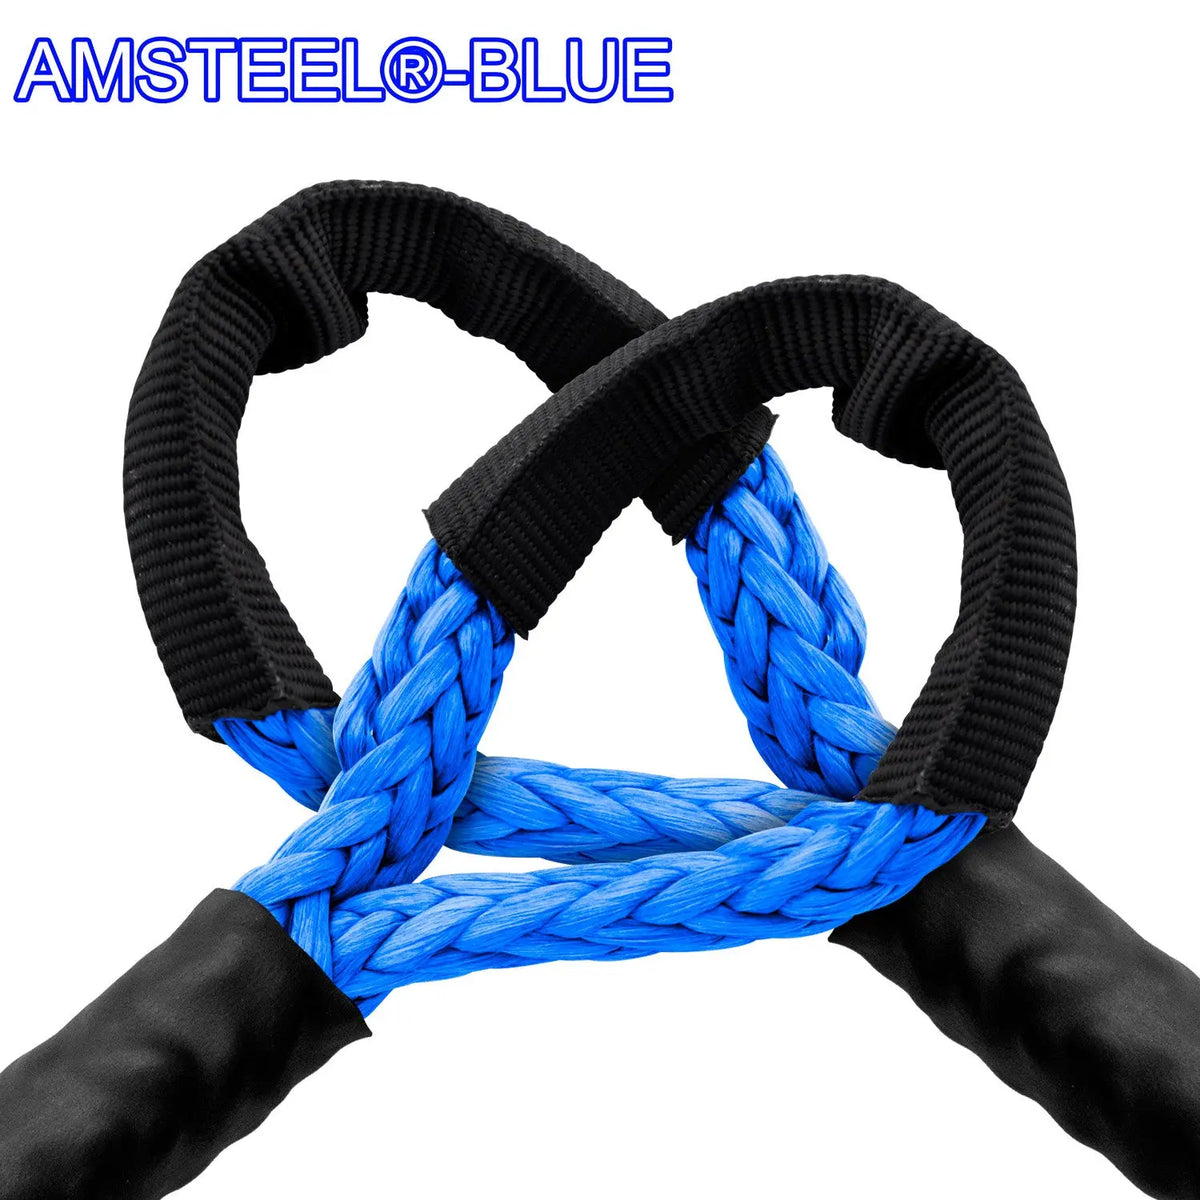 5/16" Extension - AmSteel Blue Winch Rope Custom Splice - AmSteel Blue